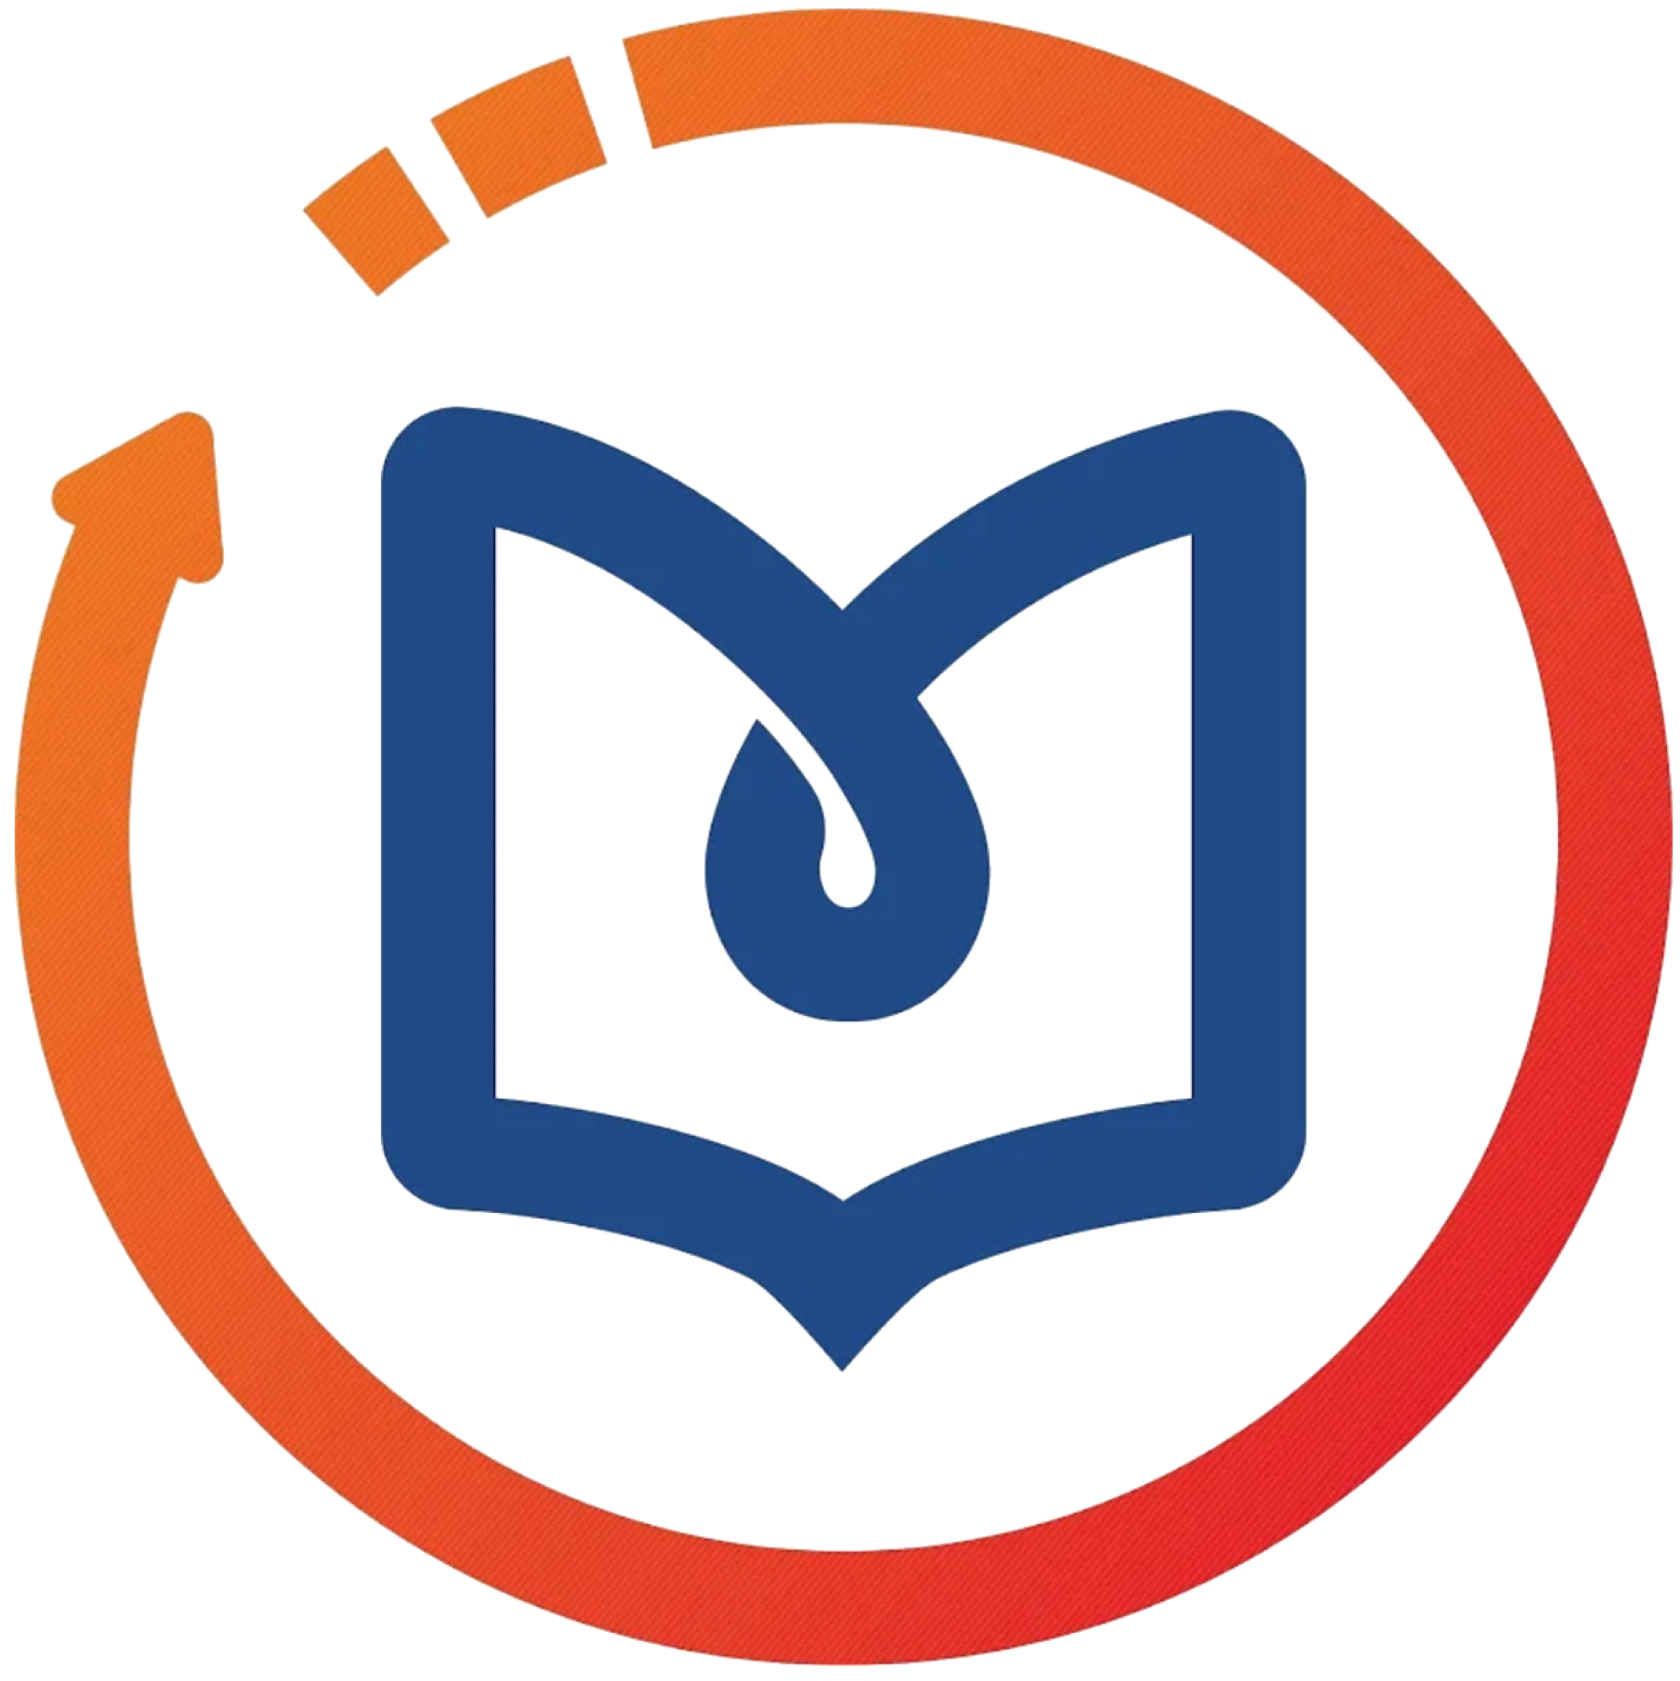 Https nmfo vo edu. Непрерывное медицинское образование логотип. НМО лого. Эмблема образования. Баллы НМО логотип.